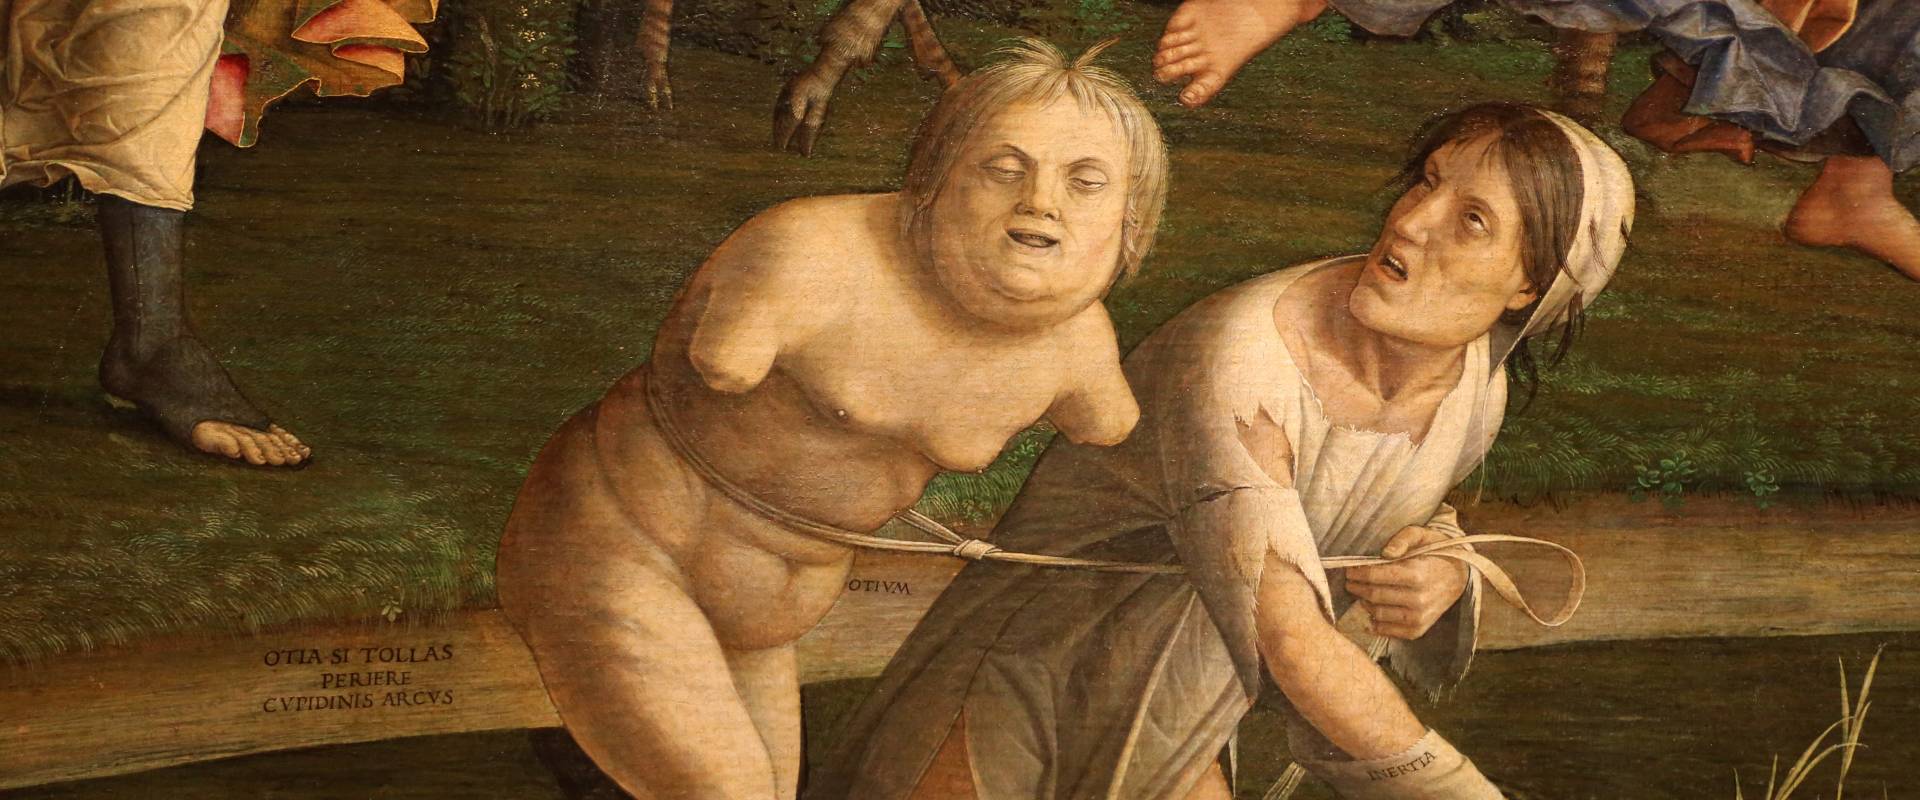 Andrea mantegna, minerva scaccia i vizi dal giardino delle virtù, 1497-1502 ca. (louvre) 21 ozio e inerzia foto di Sailko